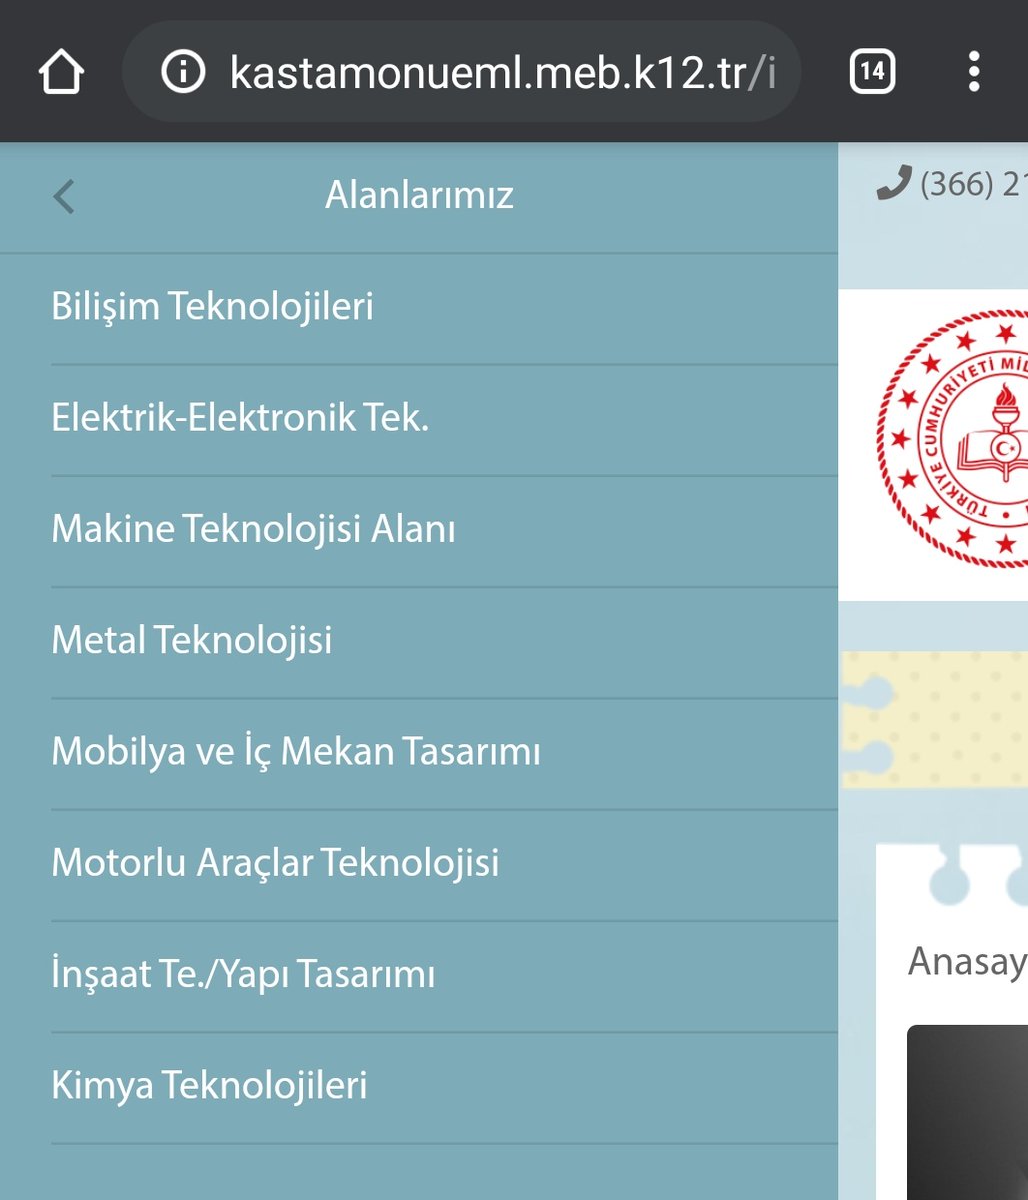 Şimdi tercih zamanı.

#tercih2020
#tercih
#meslekeğitim 

Kastamonu'da Mesleki ve Teknik Eğitimin adresi: #KastamonuTaşmektep 
Sınavlı 2 alan:Bilişim ve Motor.
Sınavsız 8 alan:Bilişim,Elektrik, Makine,Metal,Mobilya,Motor,İnşaat, Kimya
Gençleri bekliyoruz. 
kastamonueml.meb.k12.tr/icerikler/okul…